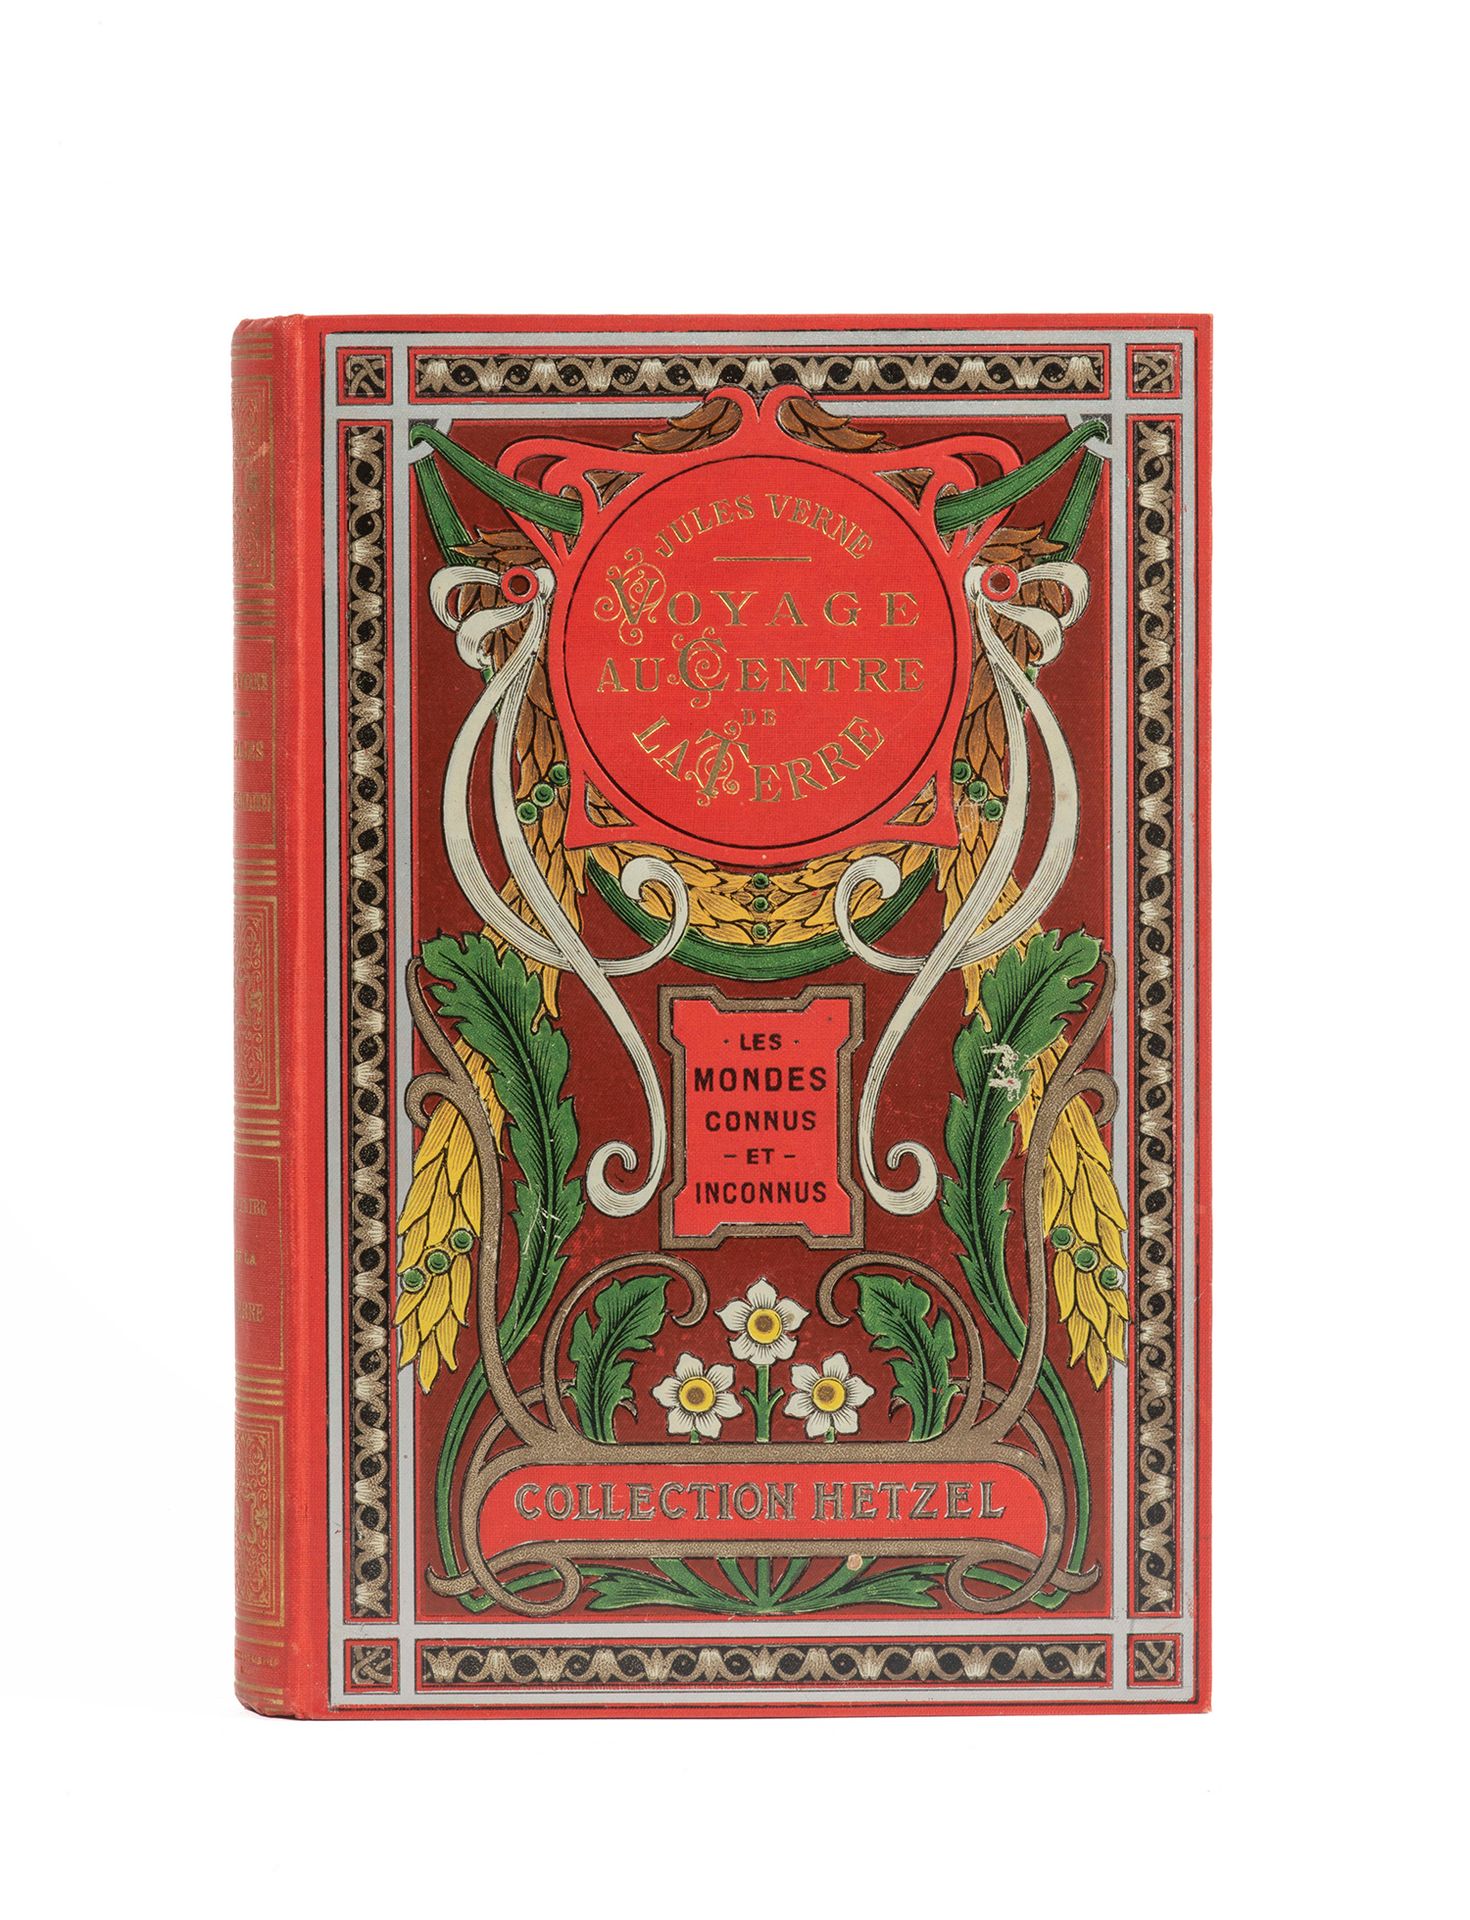 Null 儒勒-凡尔纳的《地心游记》。里欧的插图。巴黎，Hetzel收藏，日期（约1908年）。
大型单行本8页。多色出版商板" aux feuilles d'&hellip;